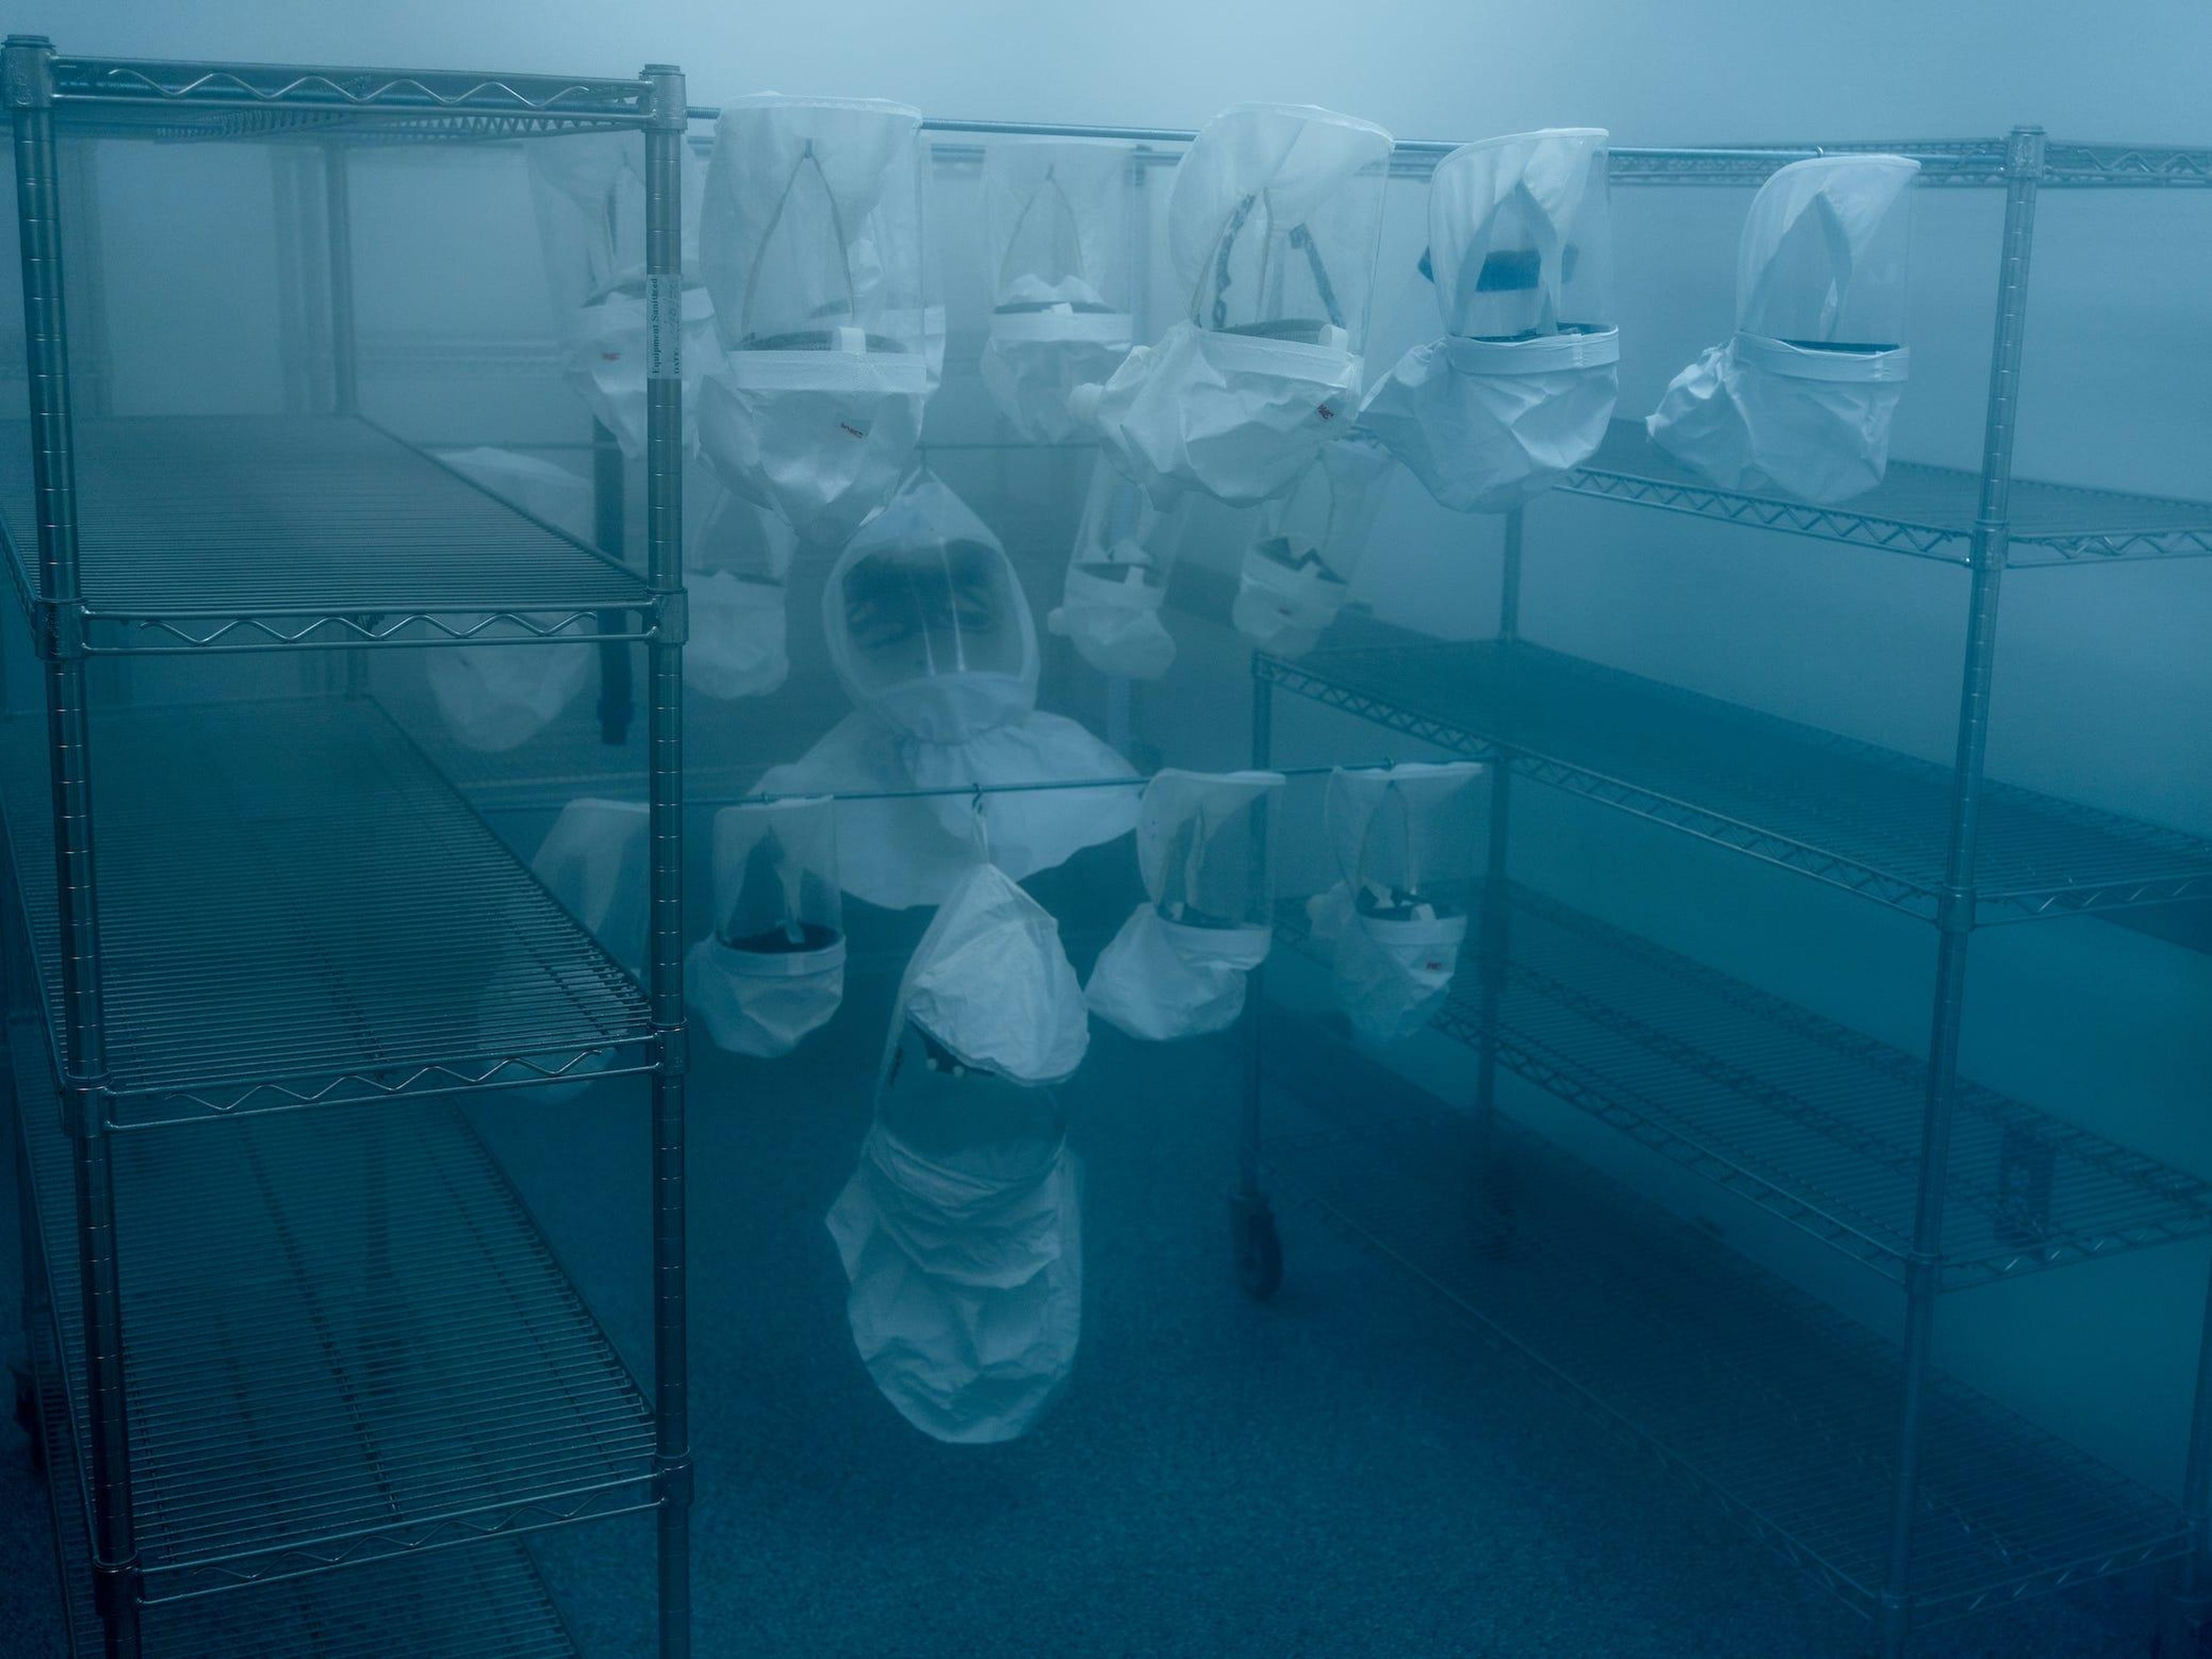 Mascarillas siendo esterilizadas en el Instituto del Cáncer Dana-Farber